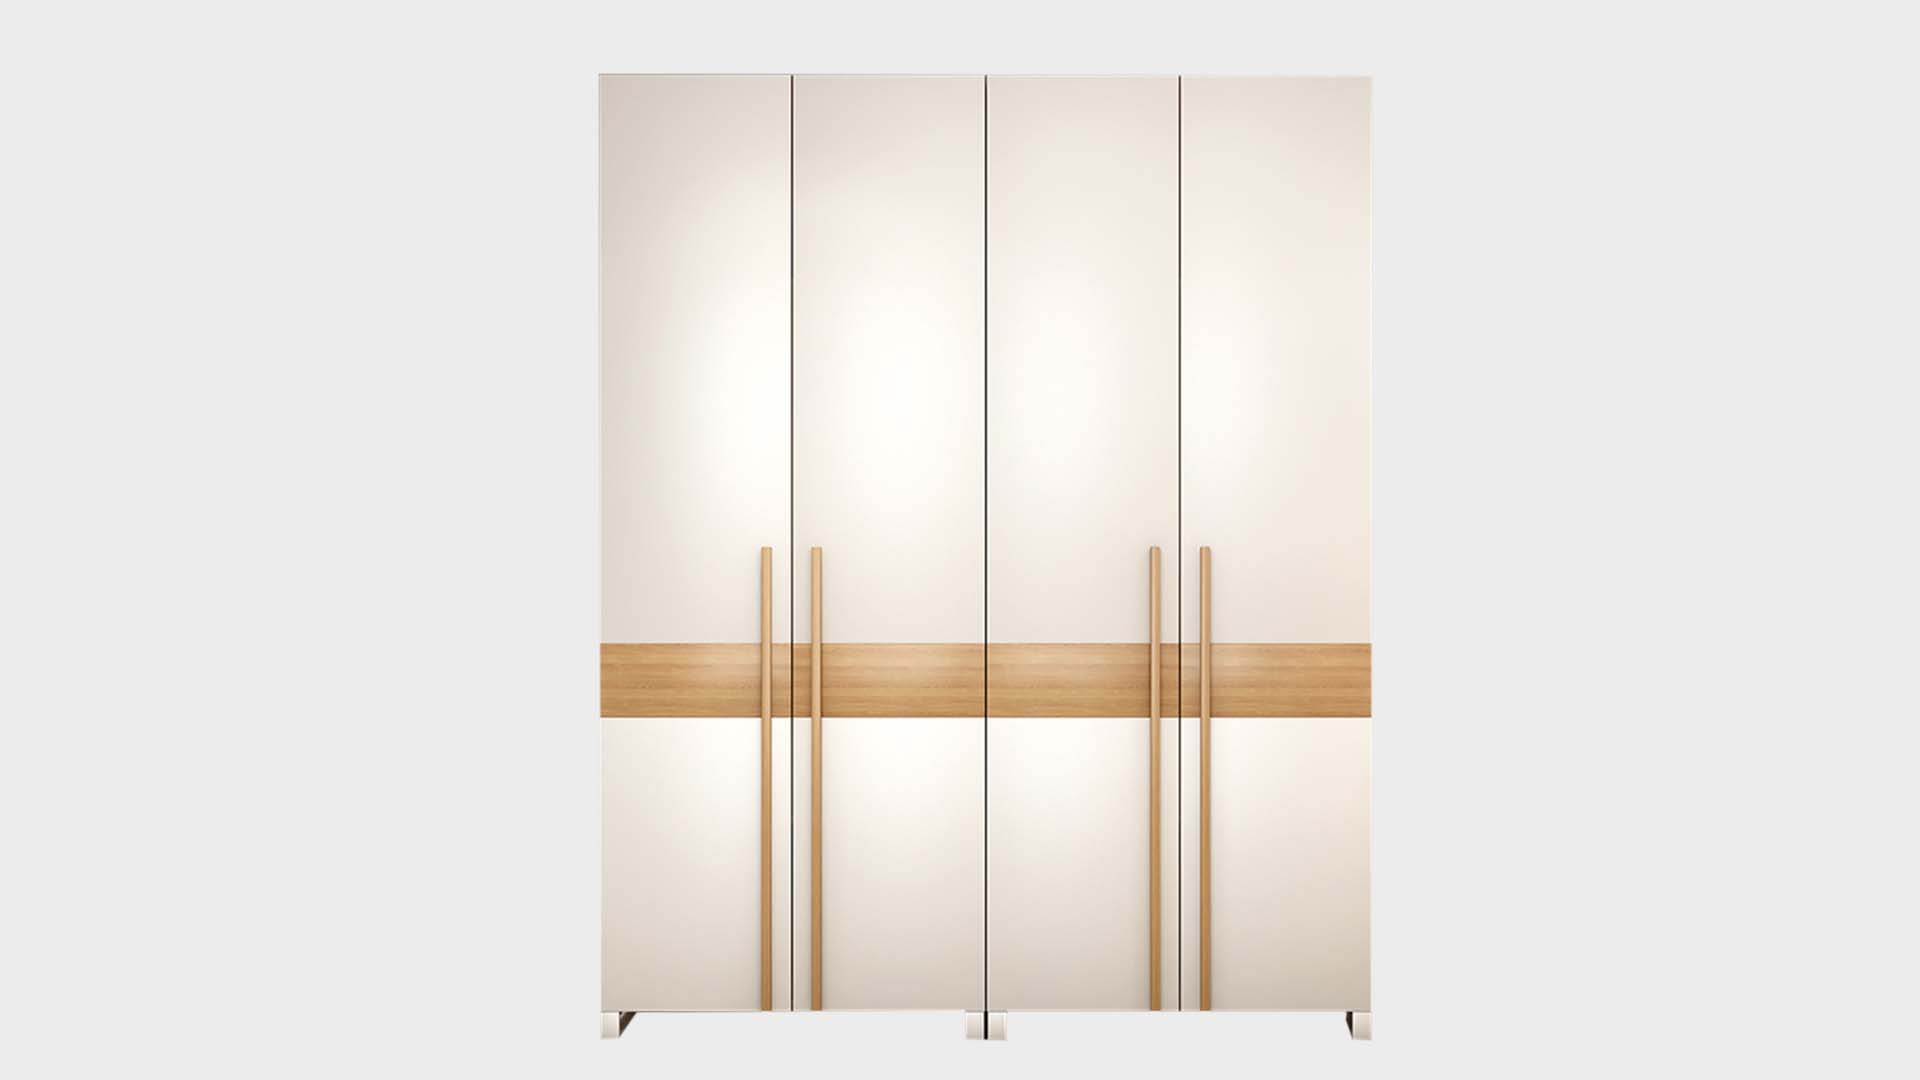 Armoire d'assemblage de panneaux nordiques pour petits appartements, armoire combinée économique, porte coulissante moderne simple, armoire peu encombrante